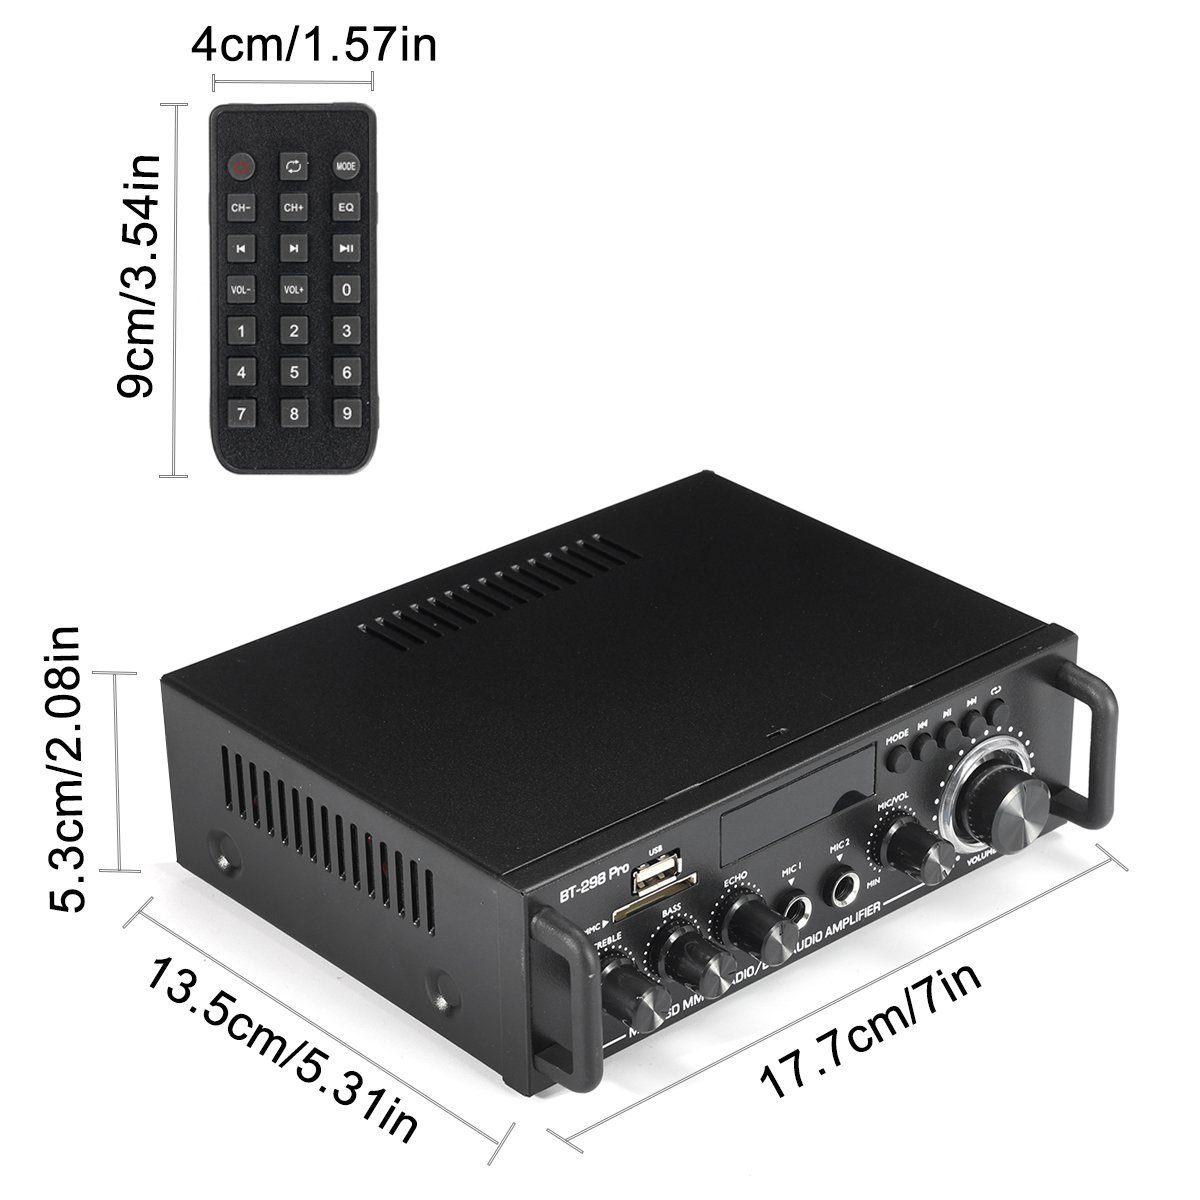 Insma Audioverstärker (2-Kanal bluetooth Verstärker Amplifier) 800W Digital HiFi Stereo Audio